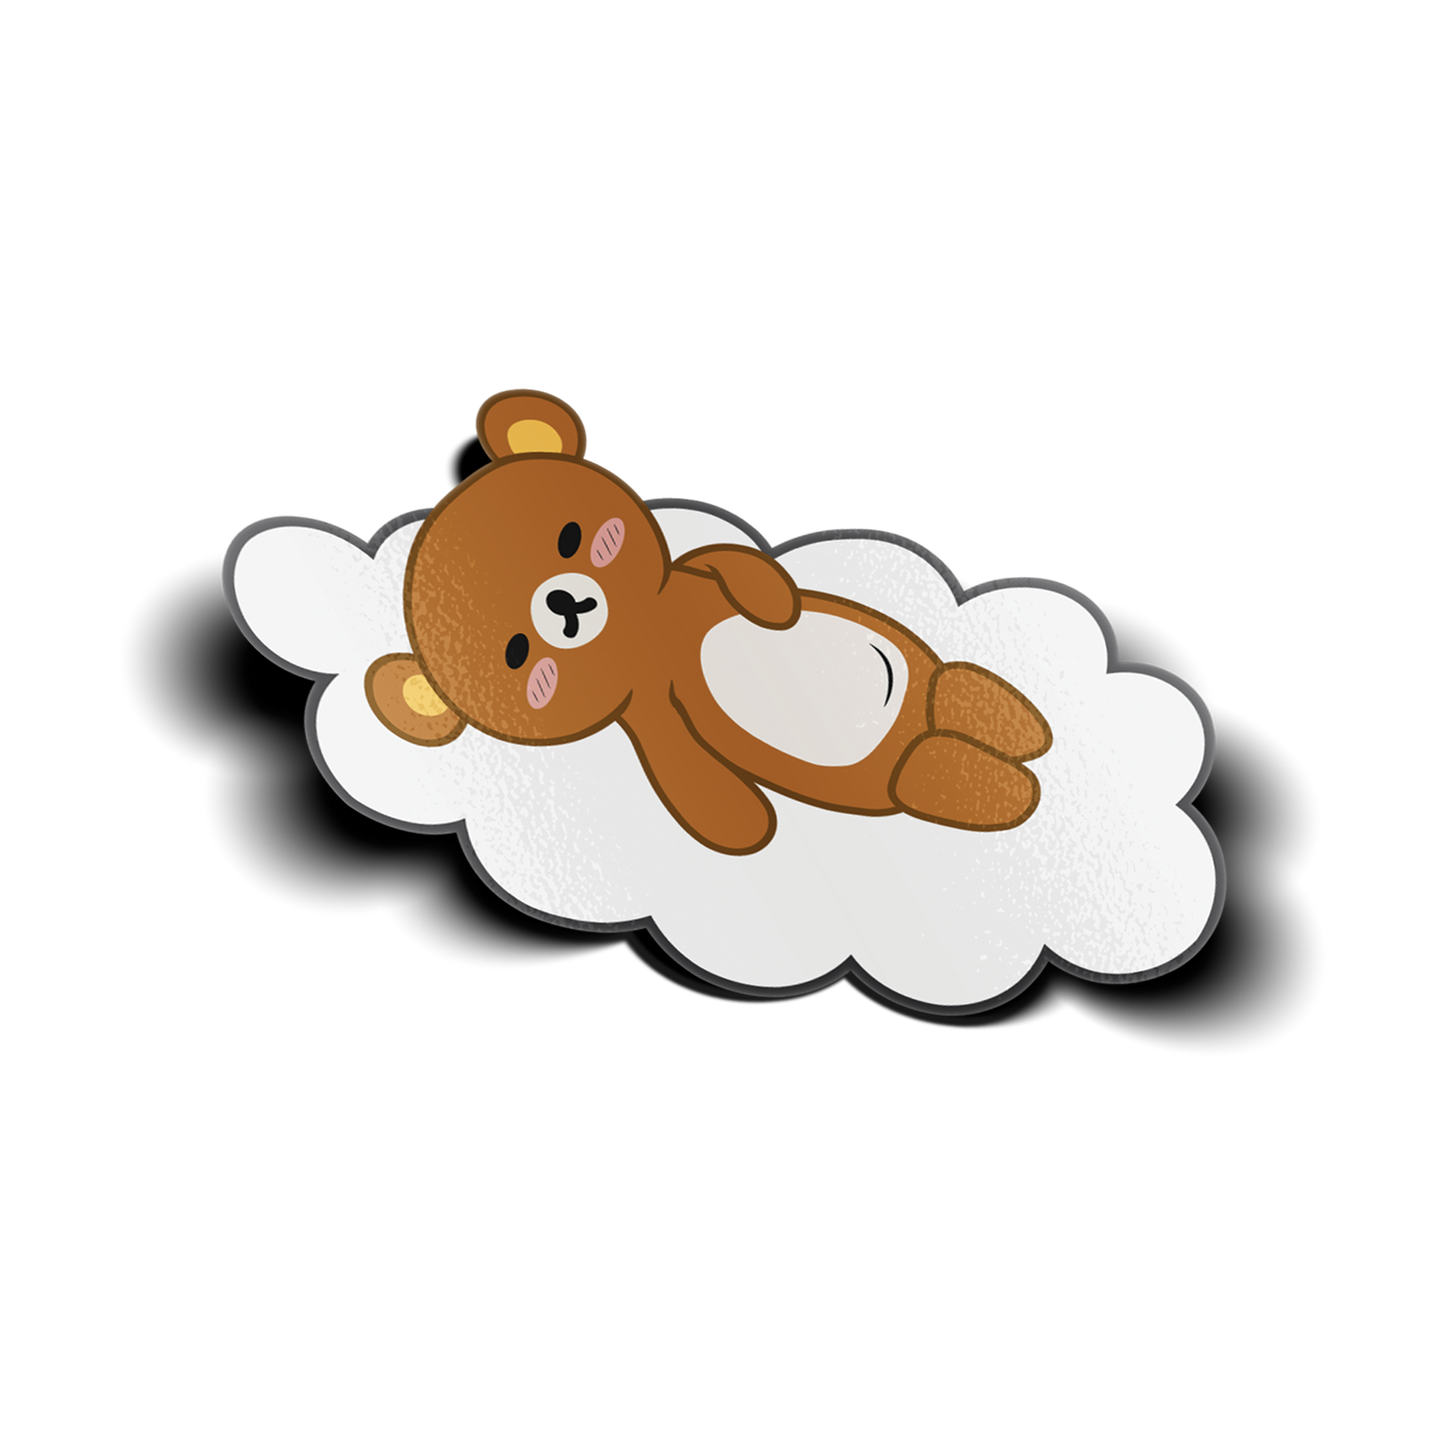 Sleeping Kuma Sticker design features sleeping brown bear on a cloud.